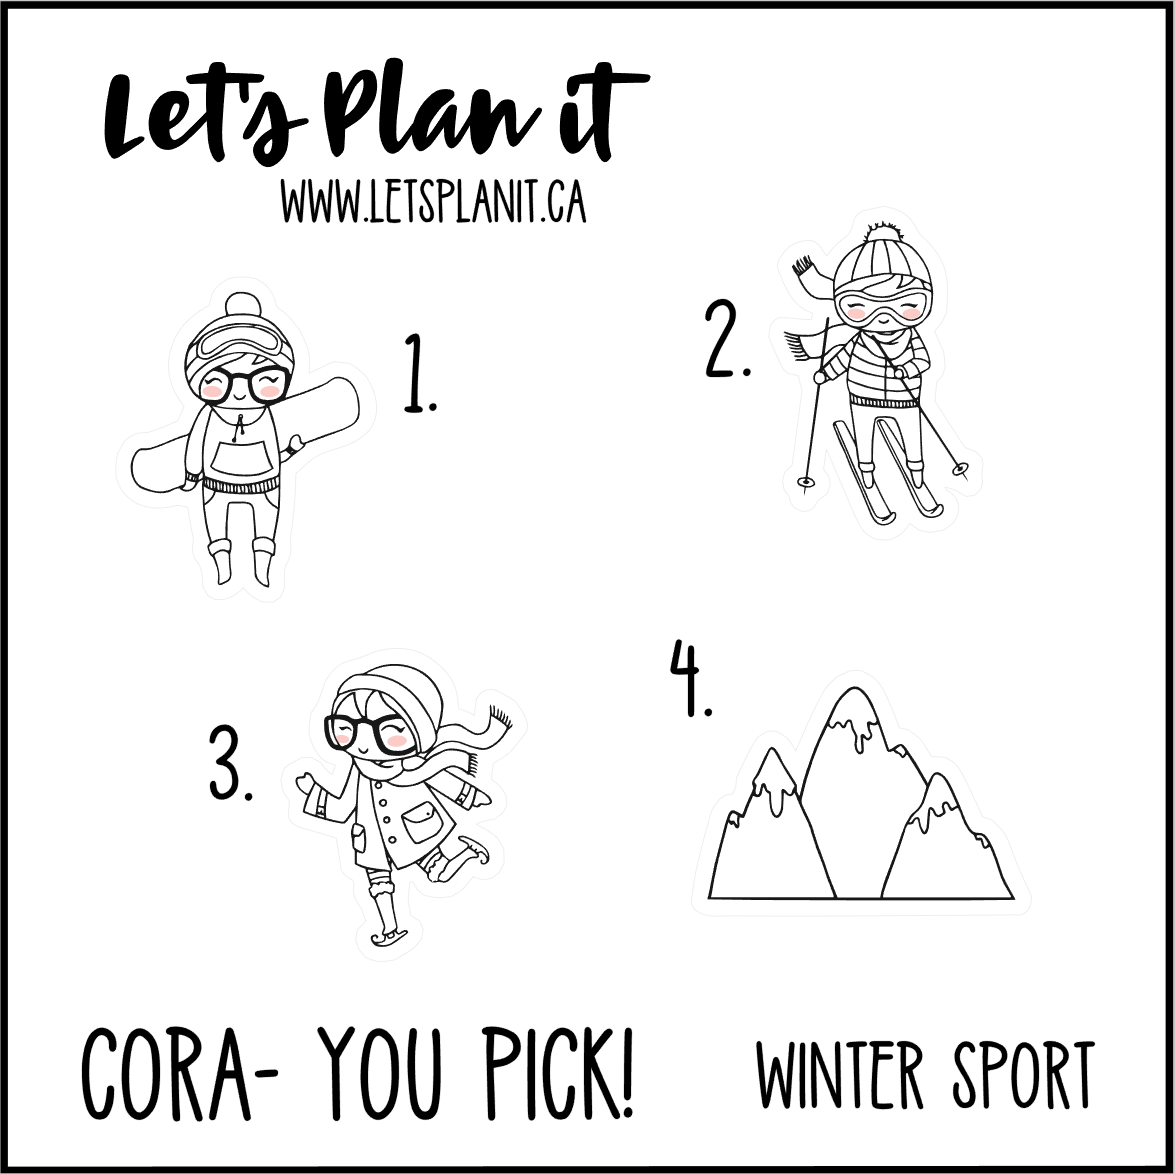 Cora-u-pick- Winter Sports